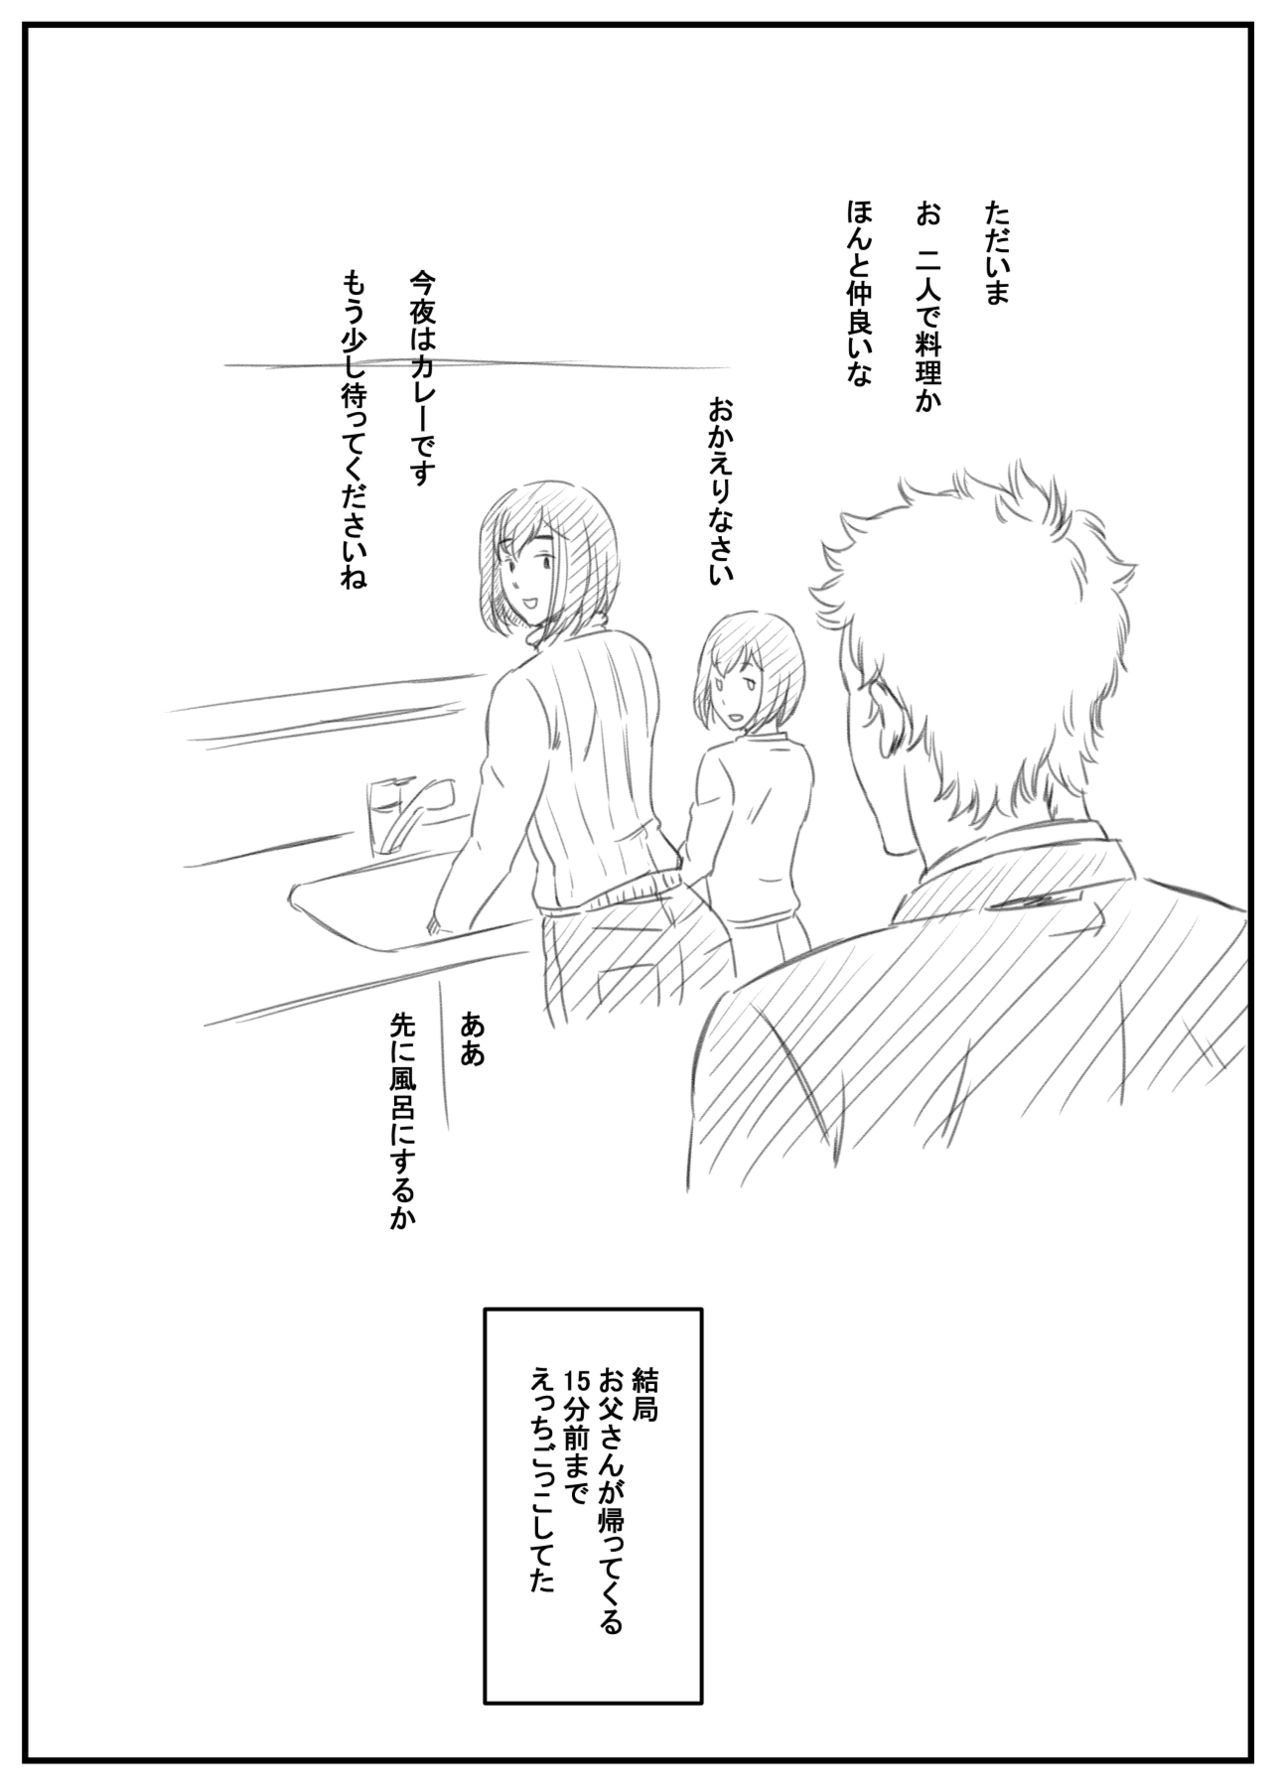 [Kingyo no Suisou] Mamiko to Shouta Boshi no Ecchi Gokko page 23 full